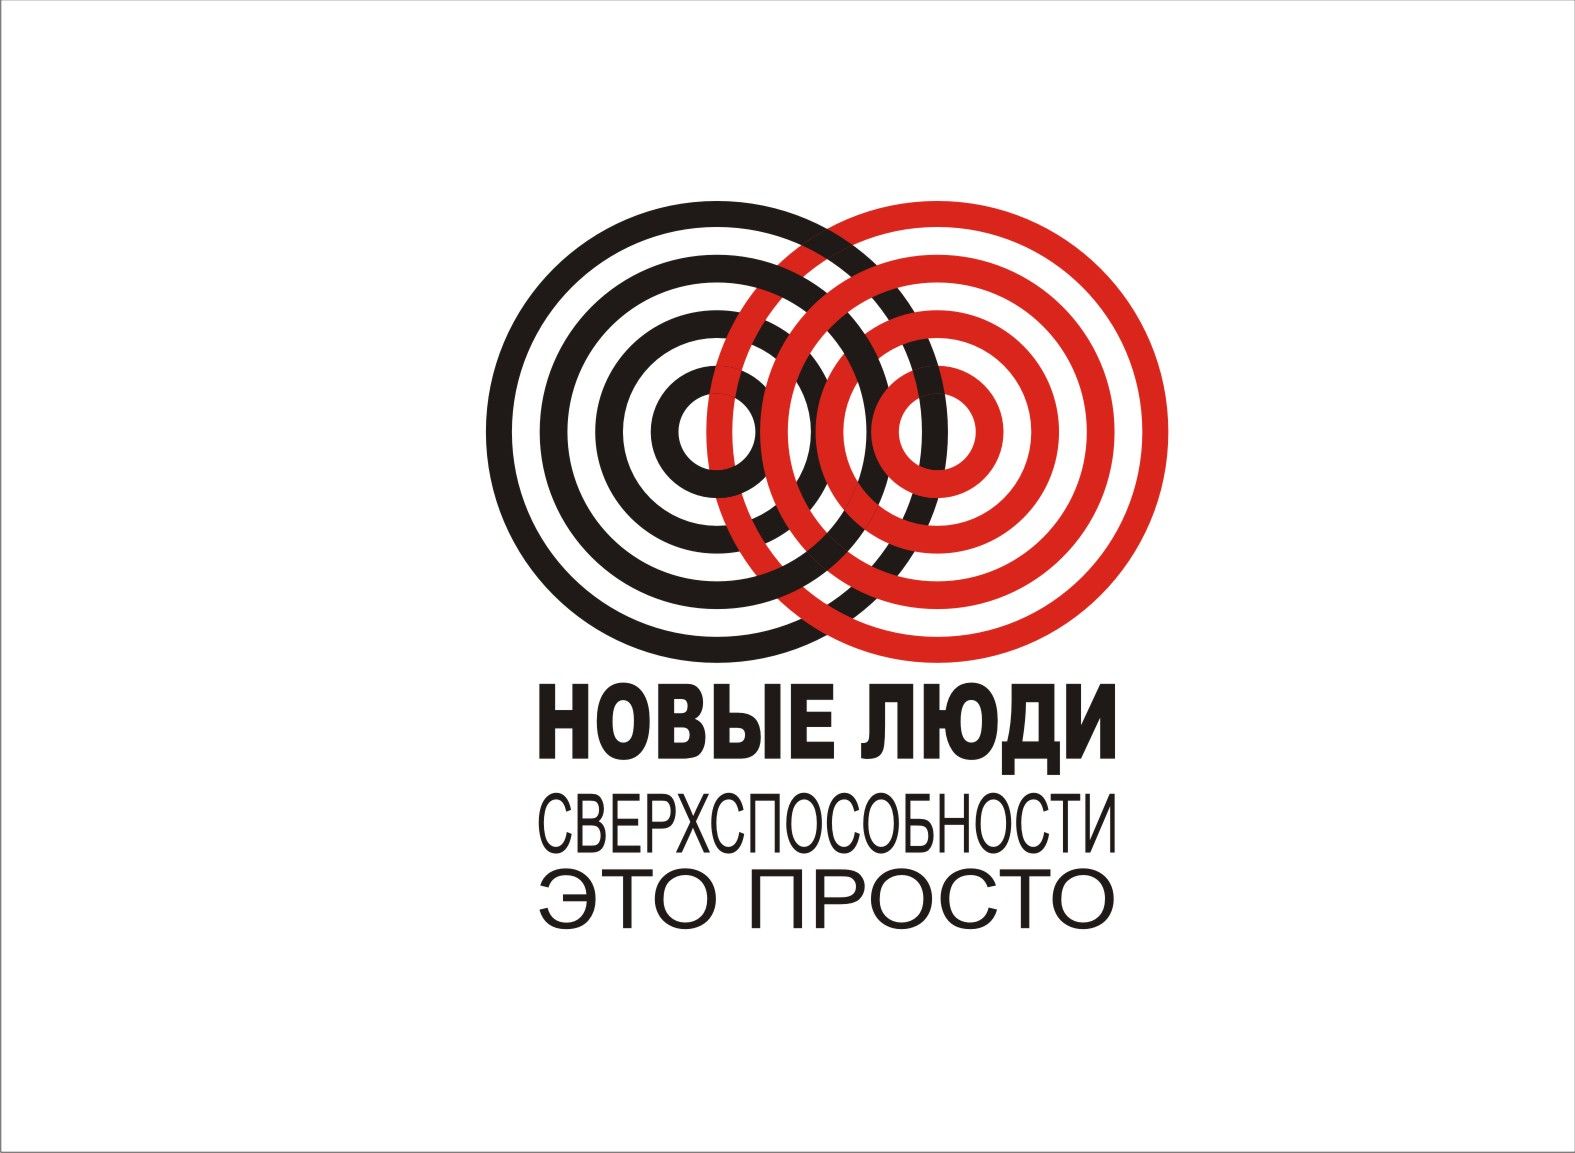 Лого и стиль тренингового центра/системы знаний - дизайнер Evgenia_021